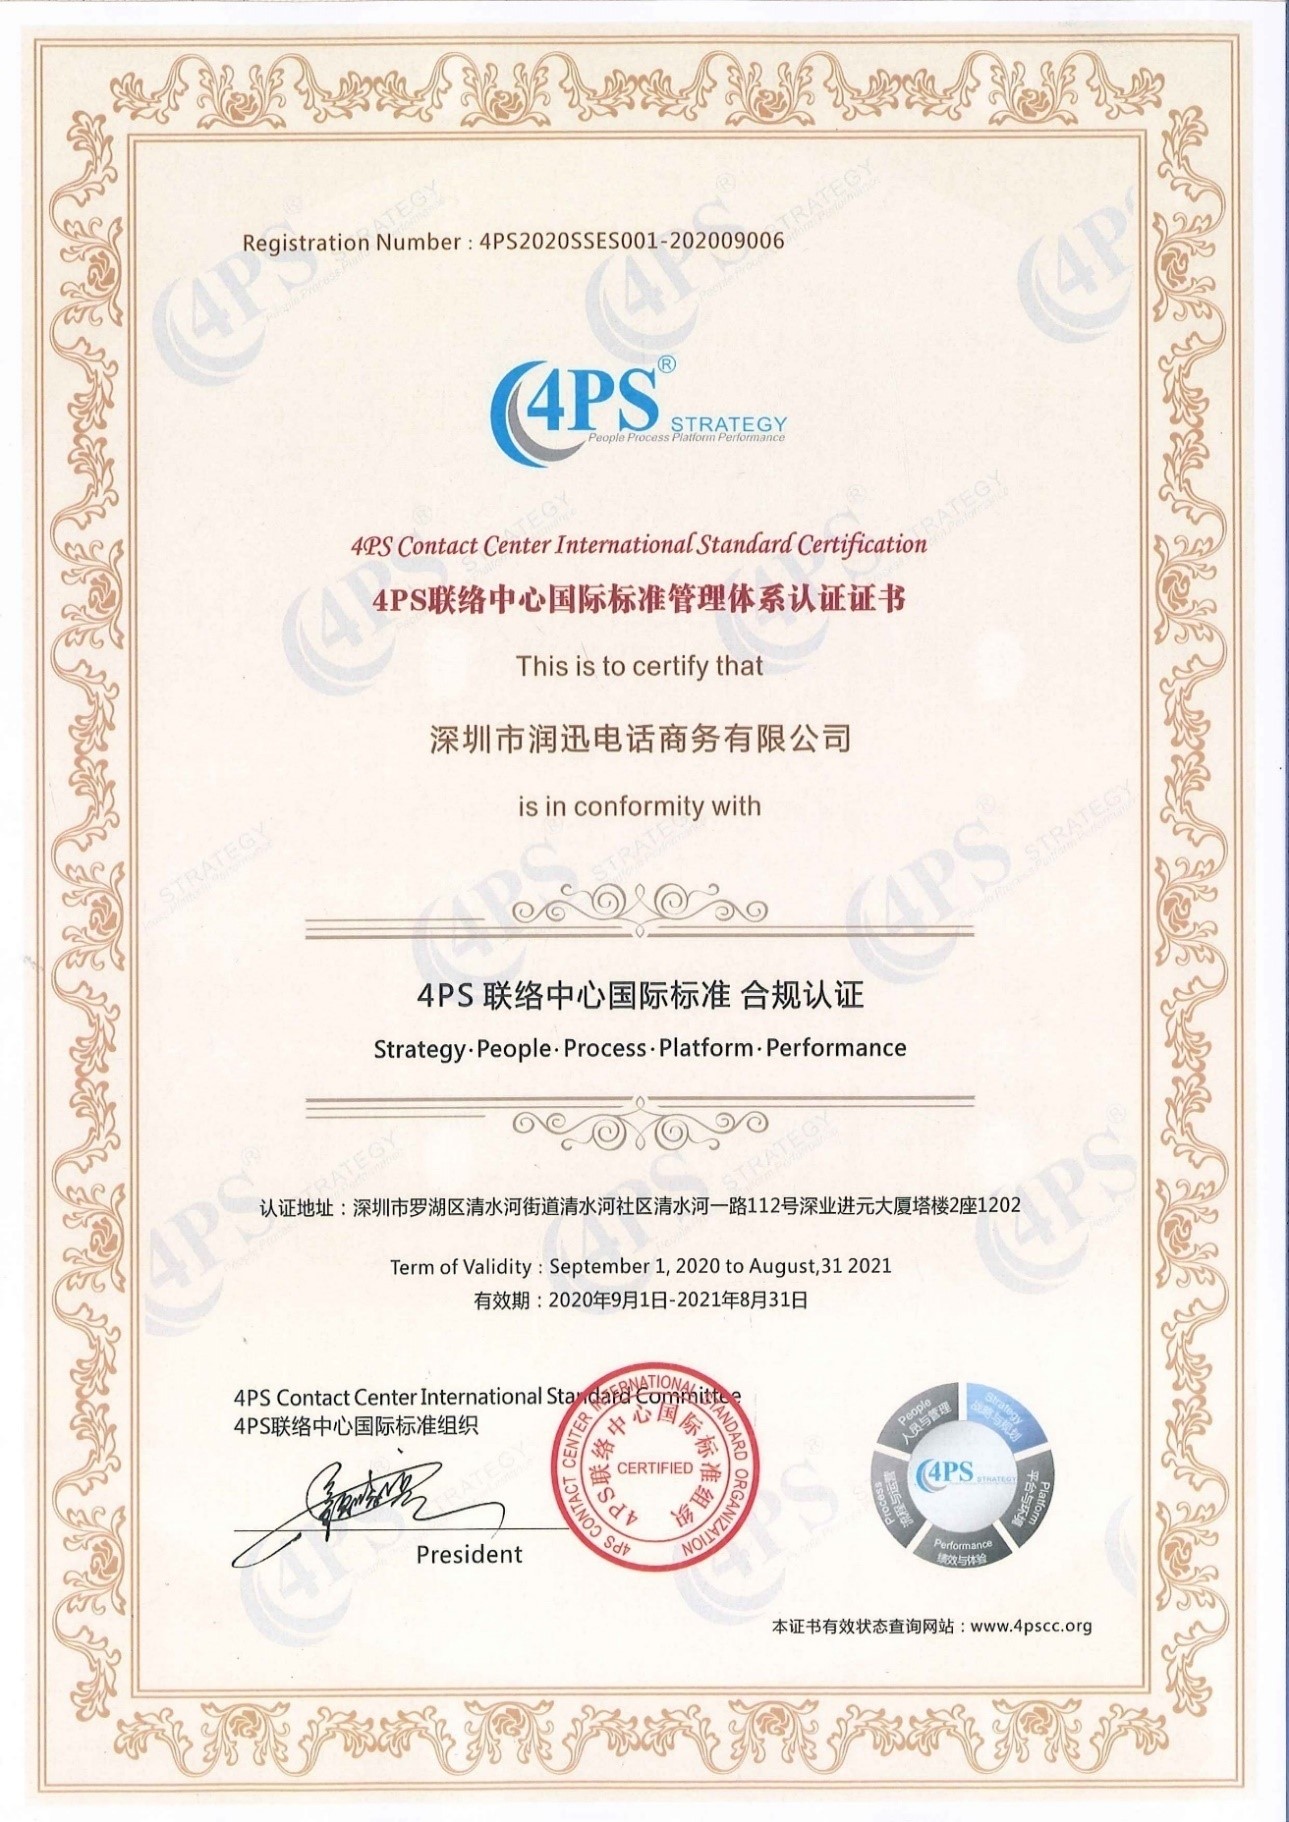 润迅电话商务4PS联络中心国际标准管理体系认证证书